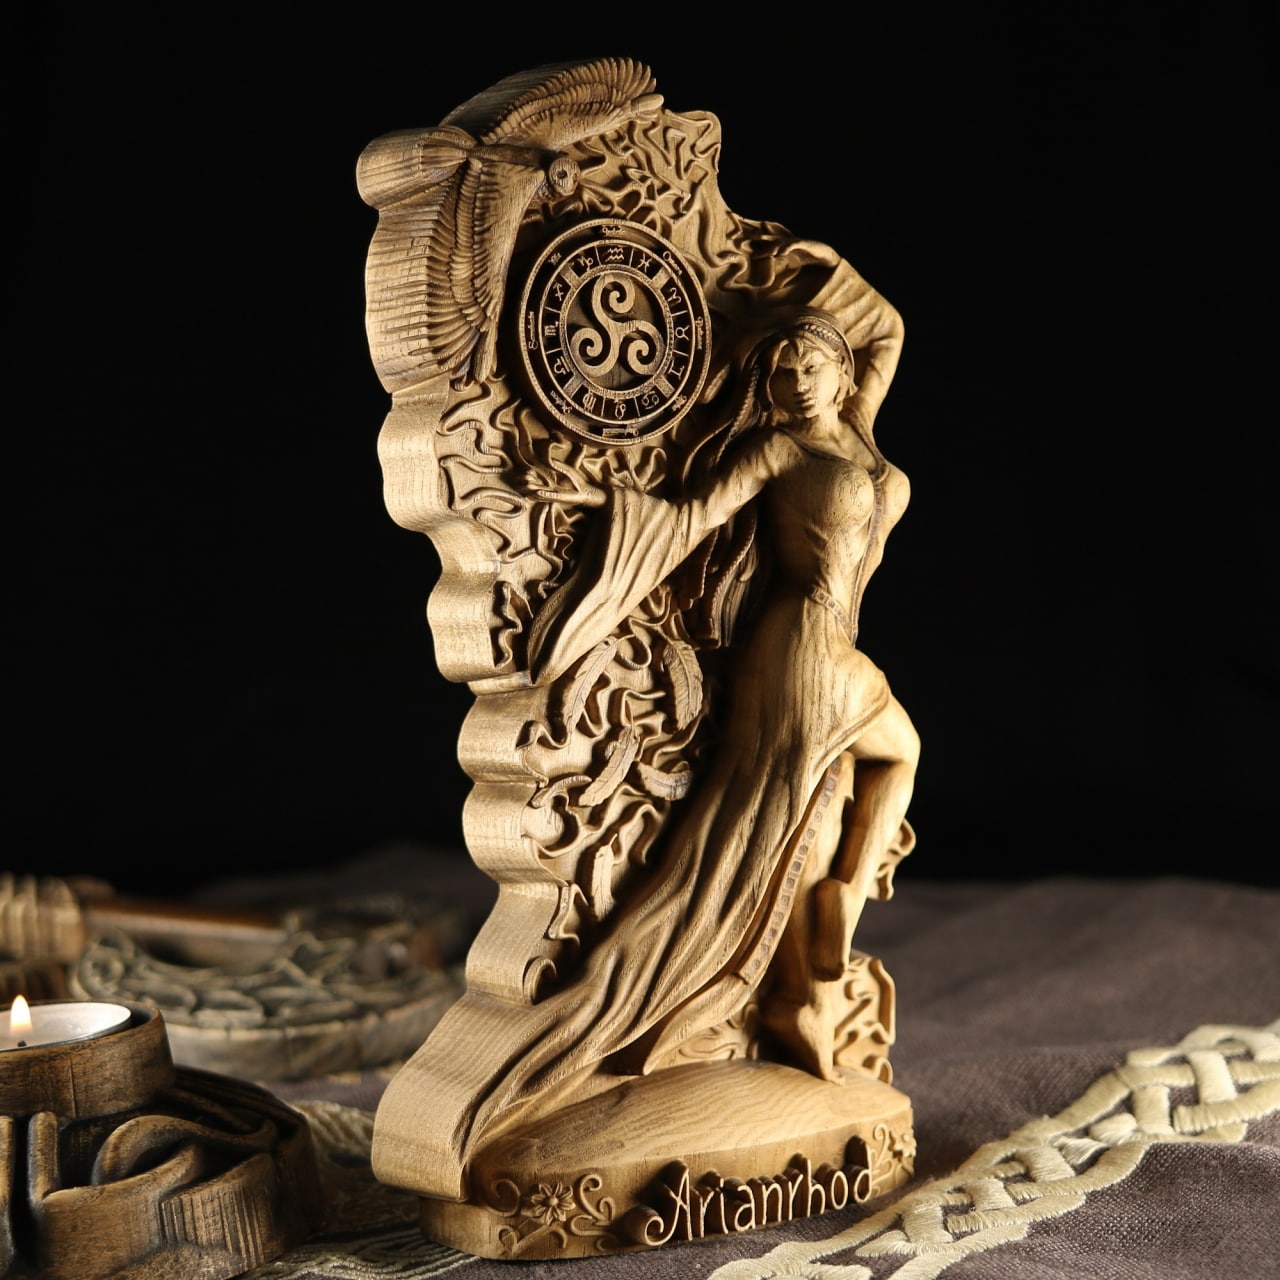 Arianrhod, Moon goddess, Wooden goddess statue Celtic goddess